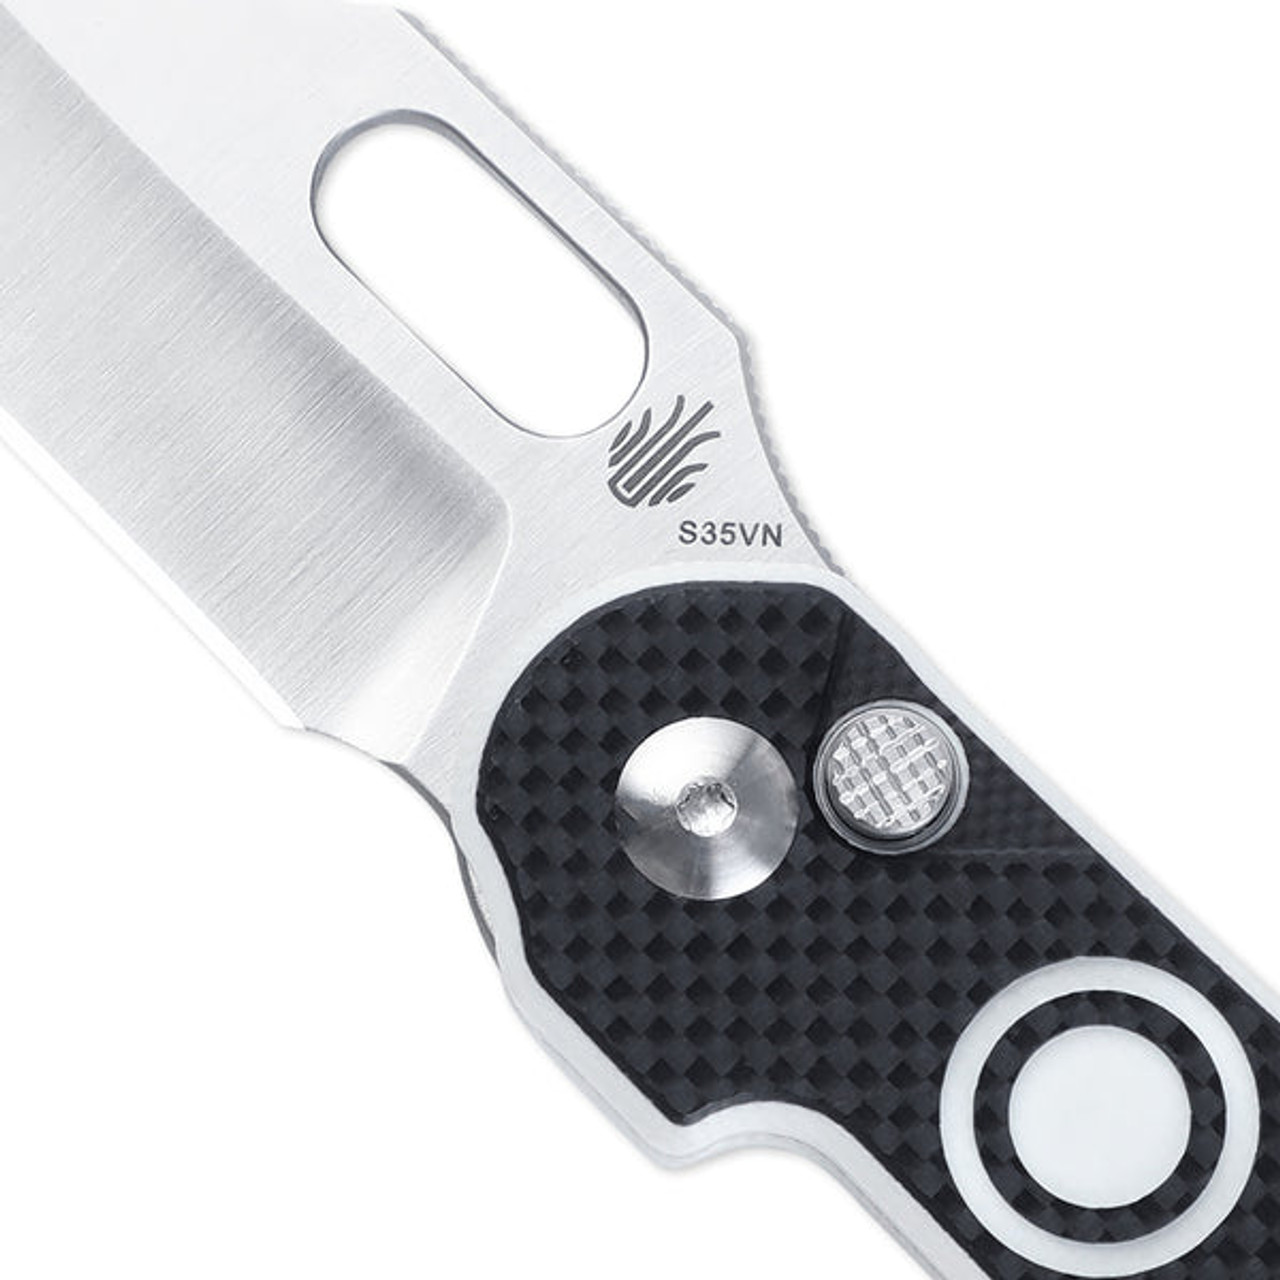 Kizer Cormorant Folding Knife (KI4562A3) 3.25 in Satin CPM S35VN Clip Point Blade, Black and White G-10 Handle